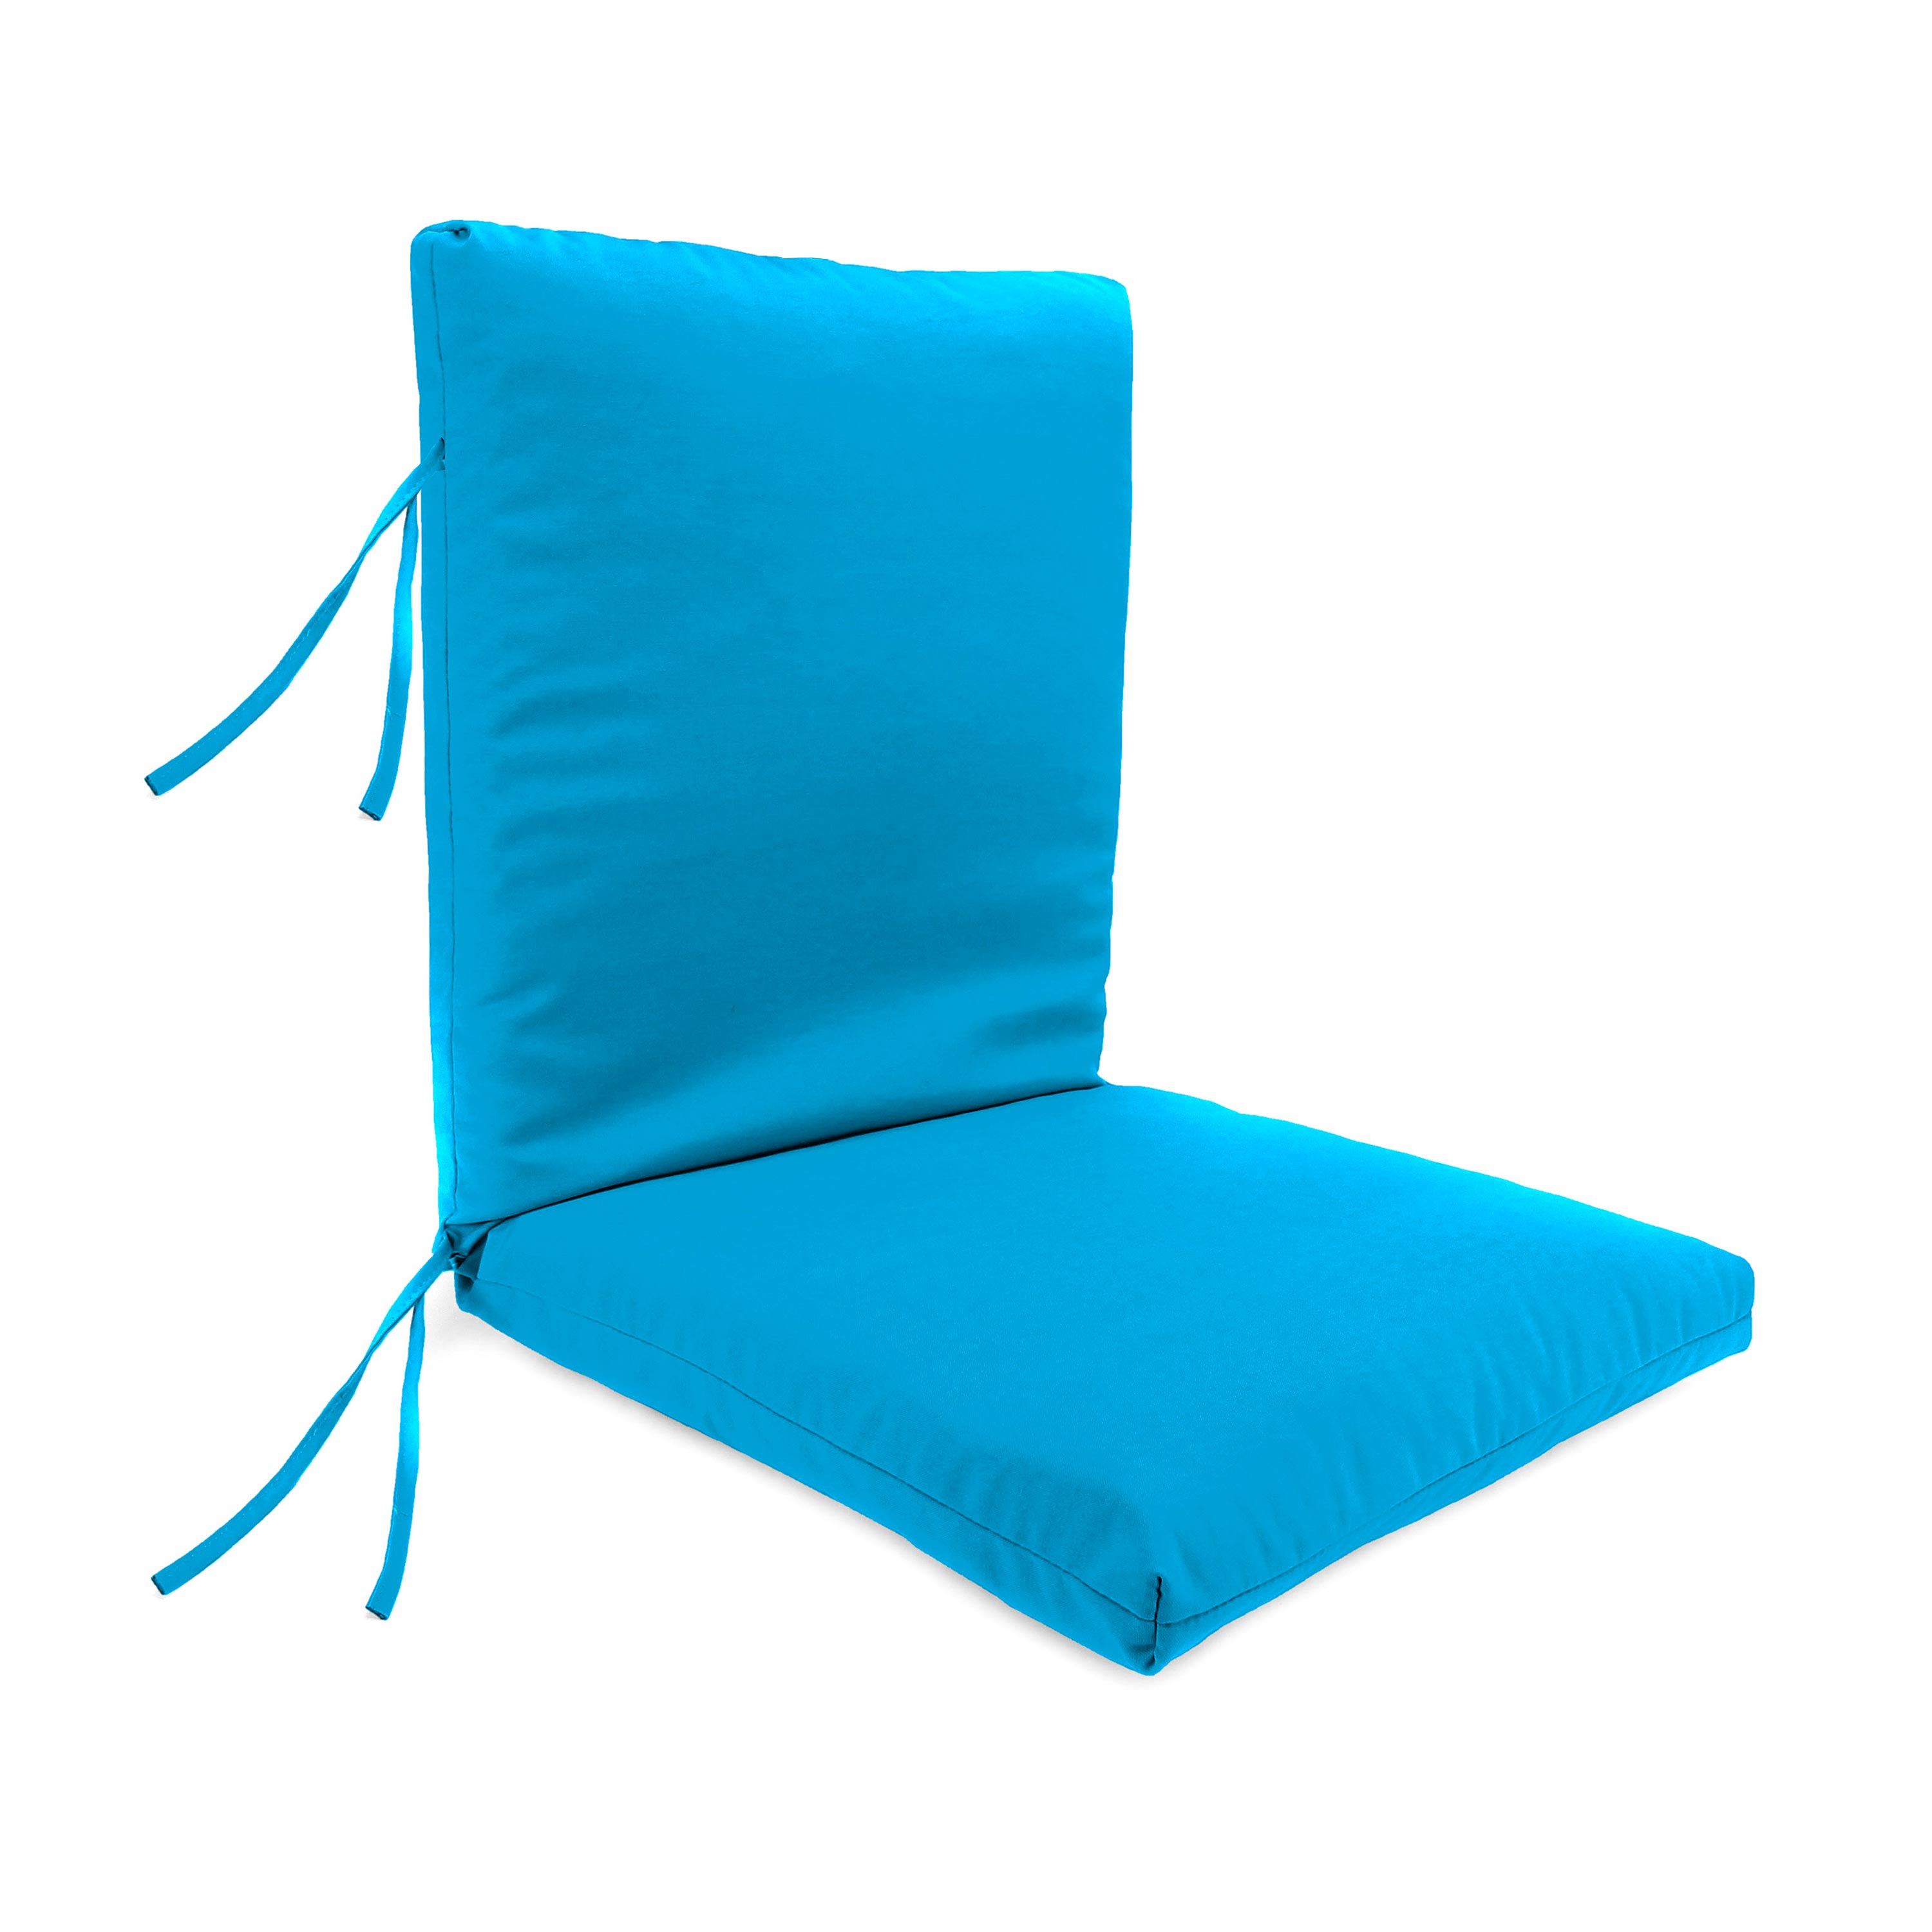 Sunbrella High Back Chair Cushion w/Ties, 46" x 20", in Poppy Stripe